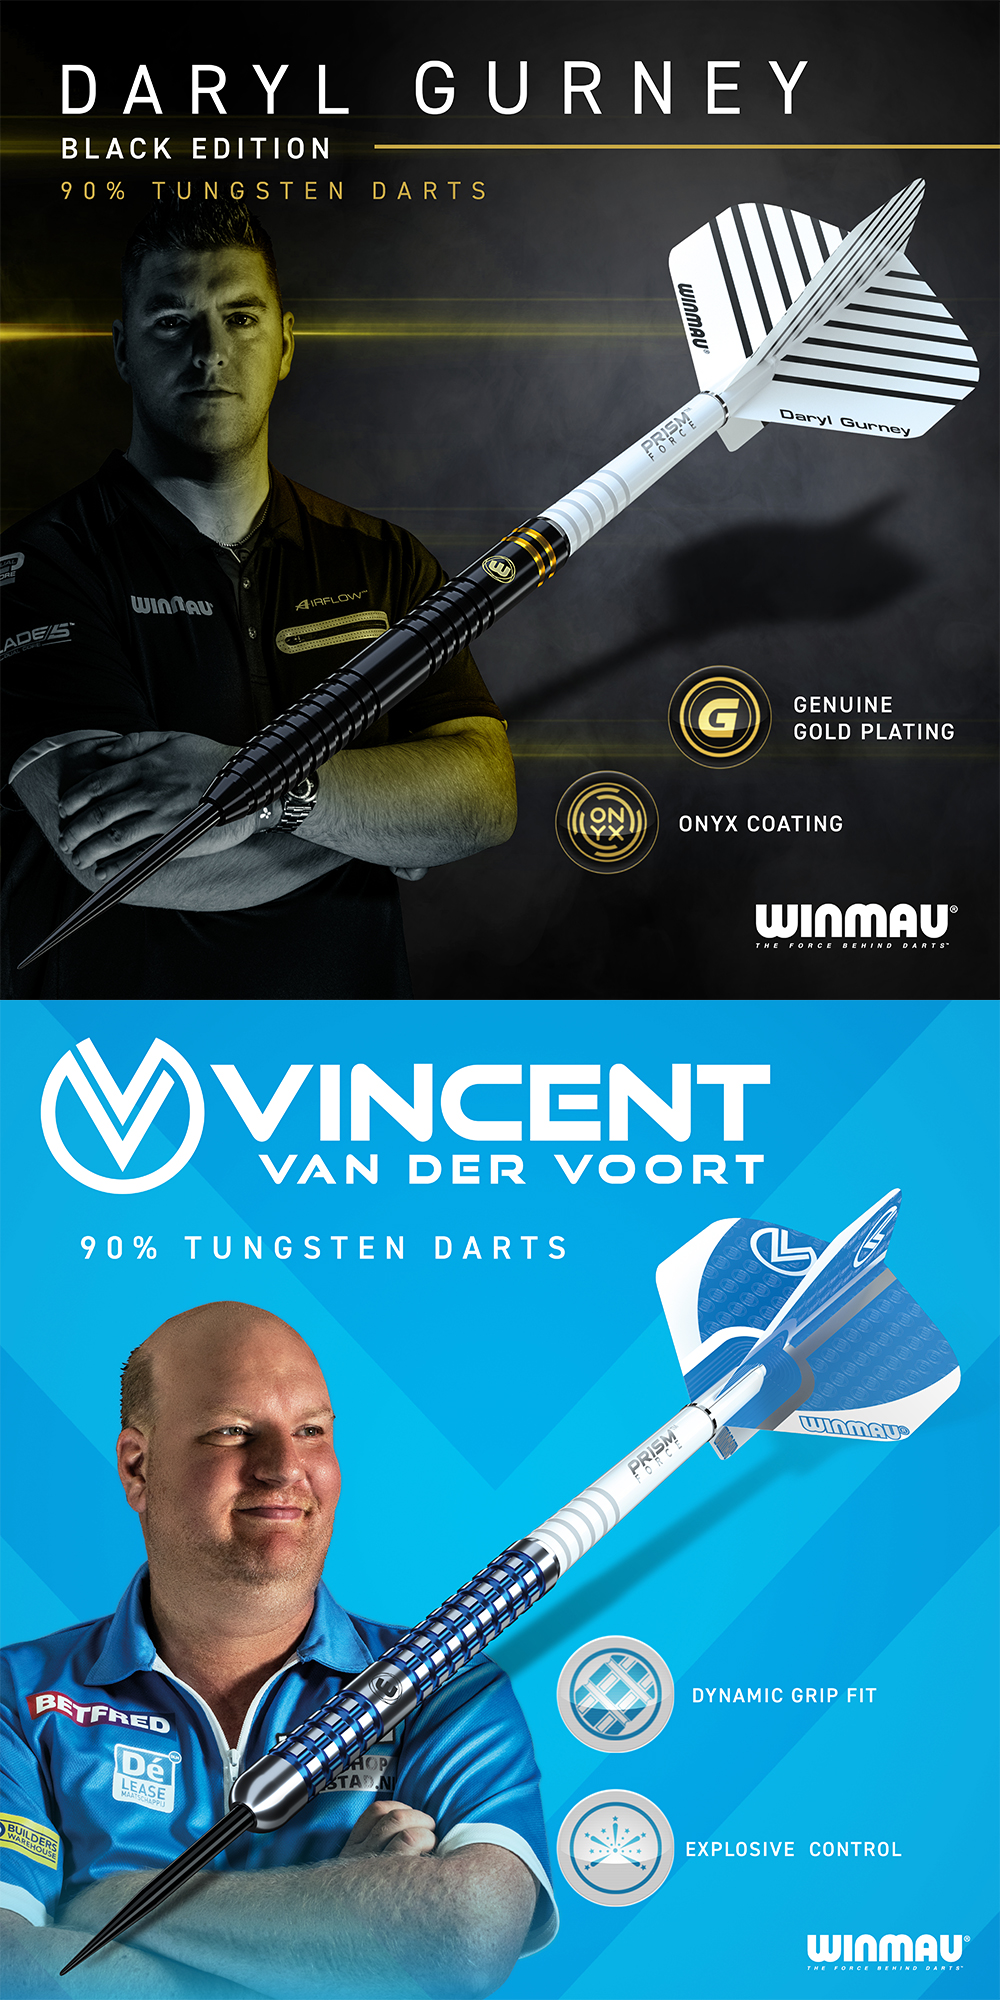 Winmau 2020 Dart Collection Launch 03.01.2020 Winmau Dart News Neuheiten 2020 Daryl Gurney, Vincent van der Voort - Darts, Dartshirts, Flights, Wallet Tour Edition